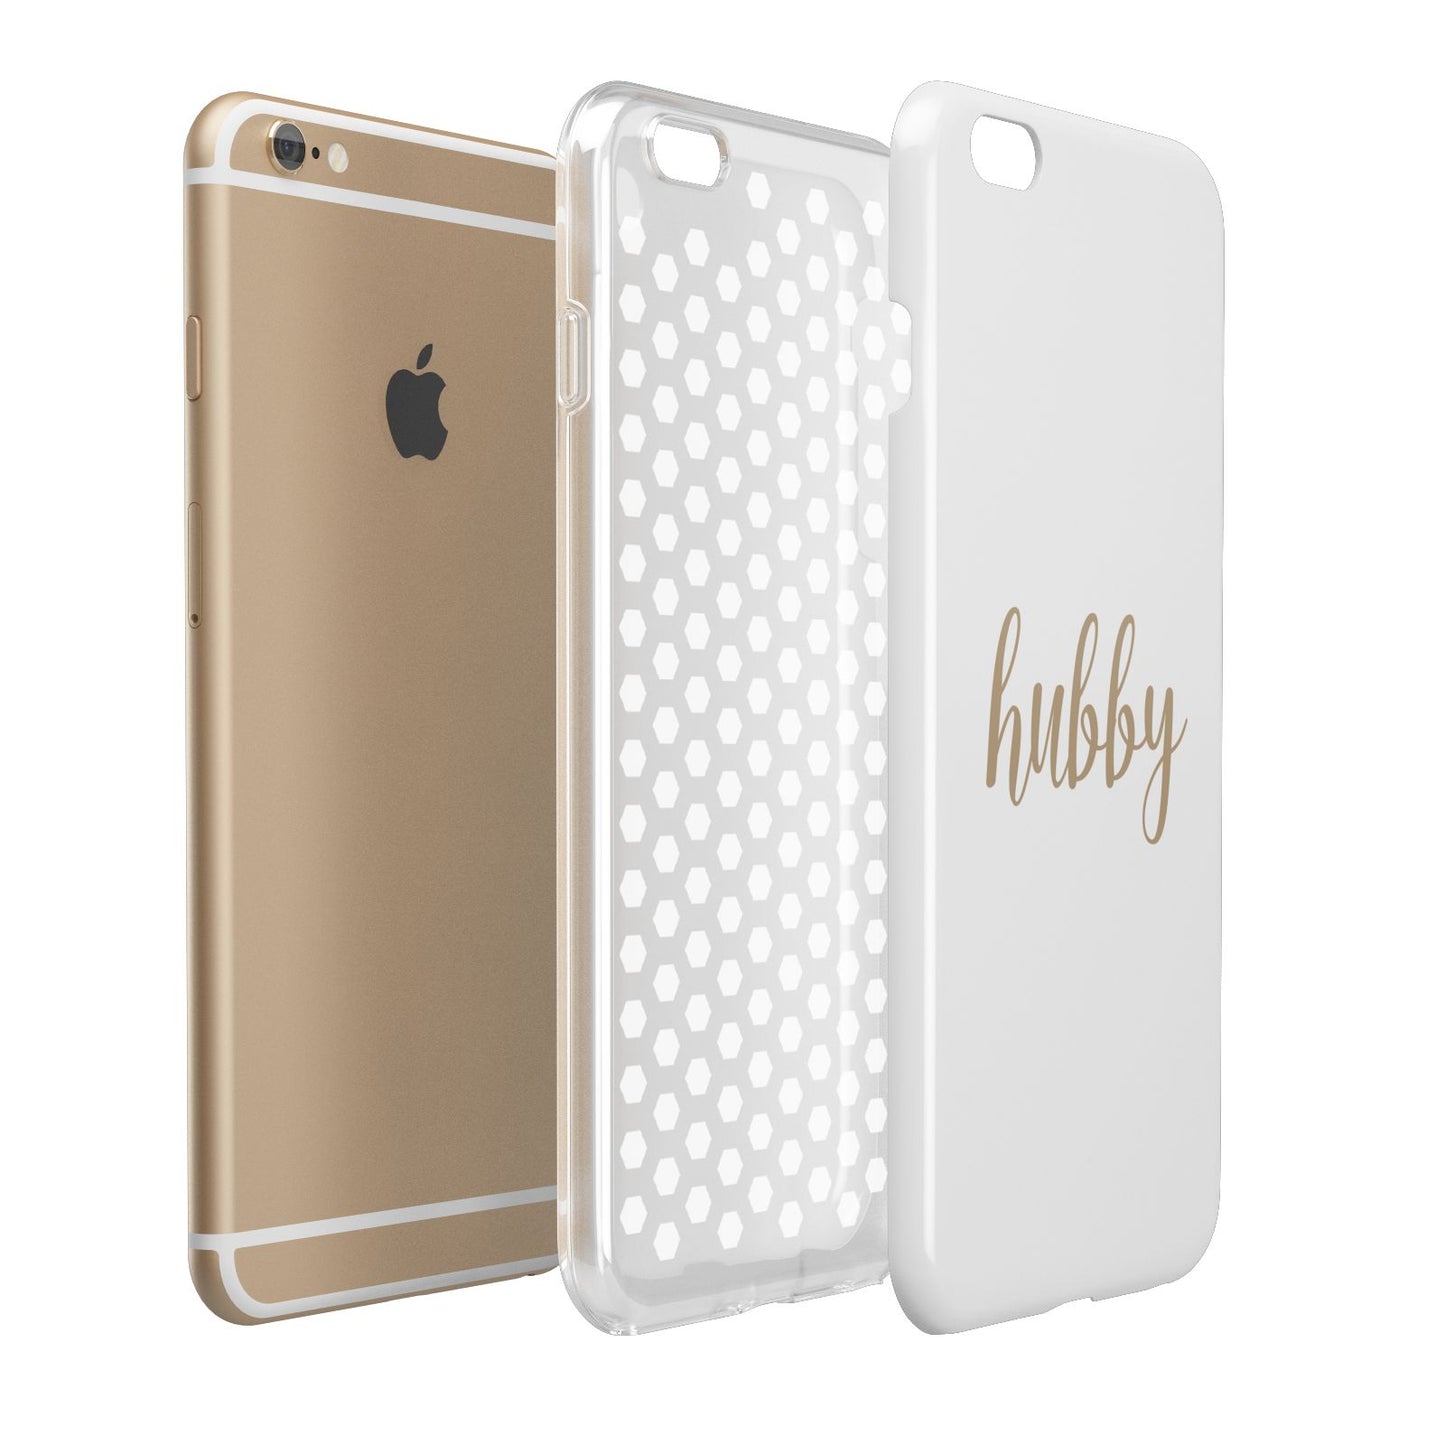 Hubby Apple iPhone 6 Plus 3D Tough Case